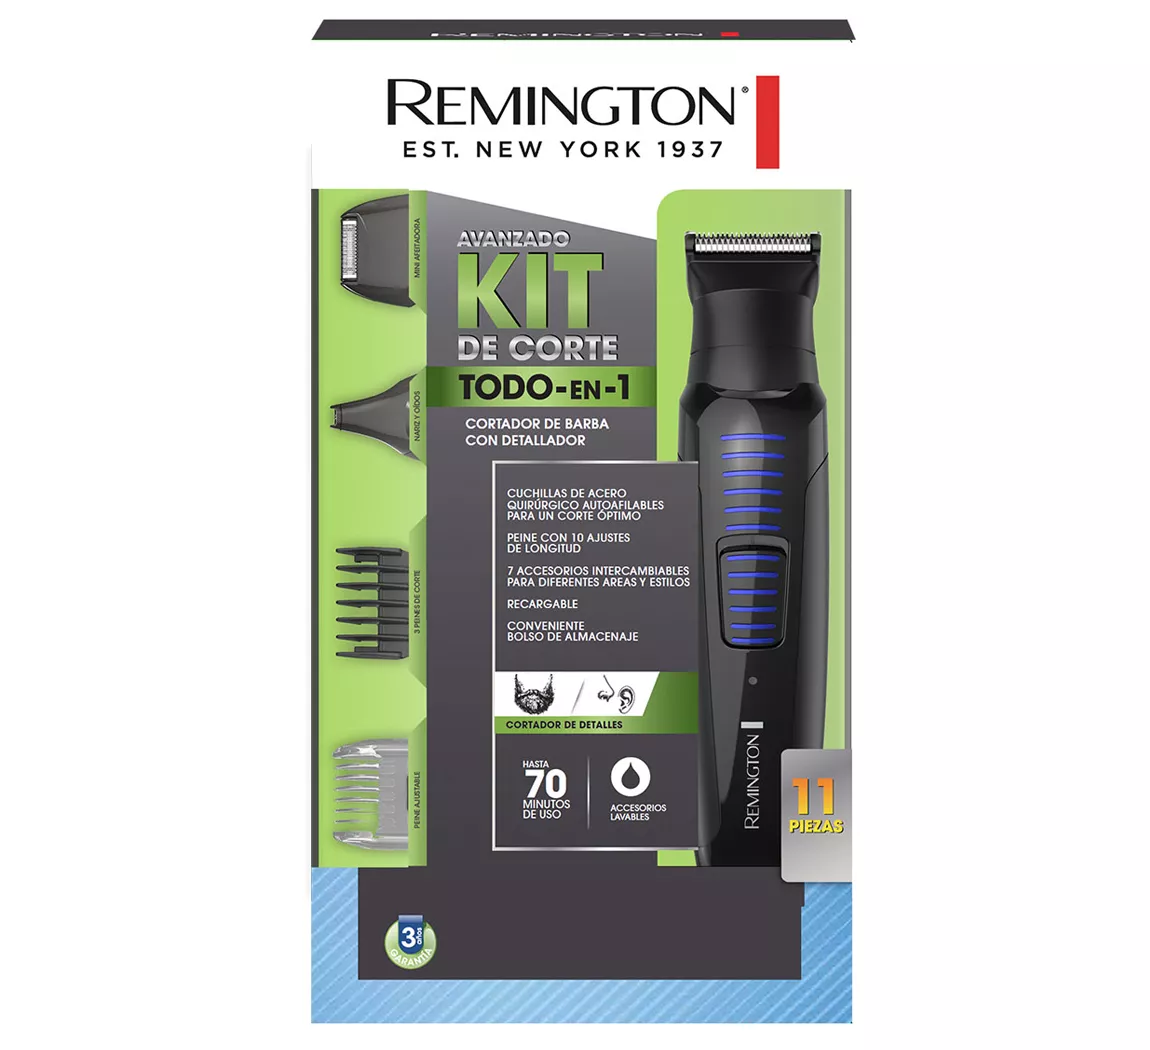 Remington kit de corte de barba todo en 1